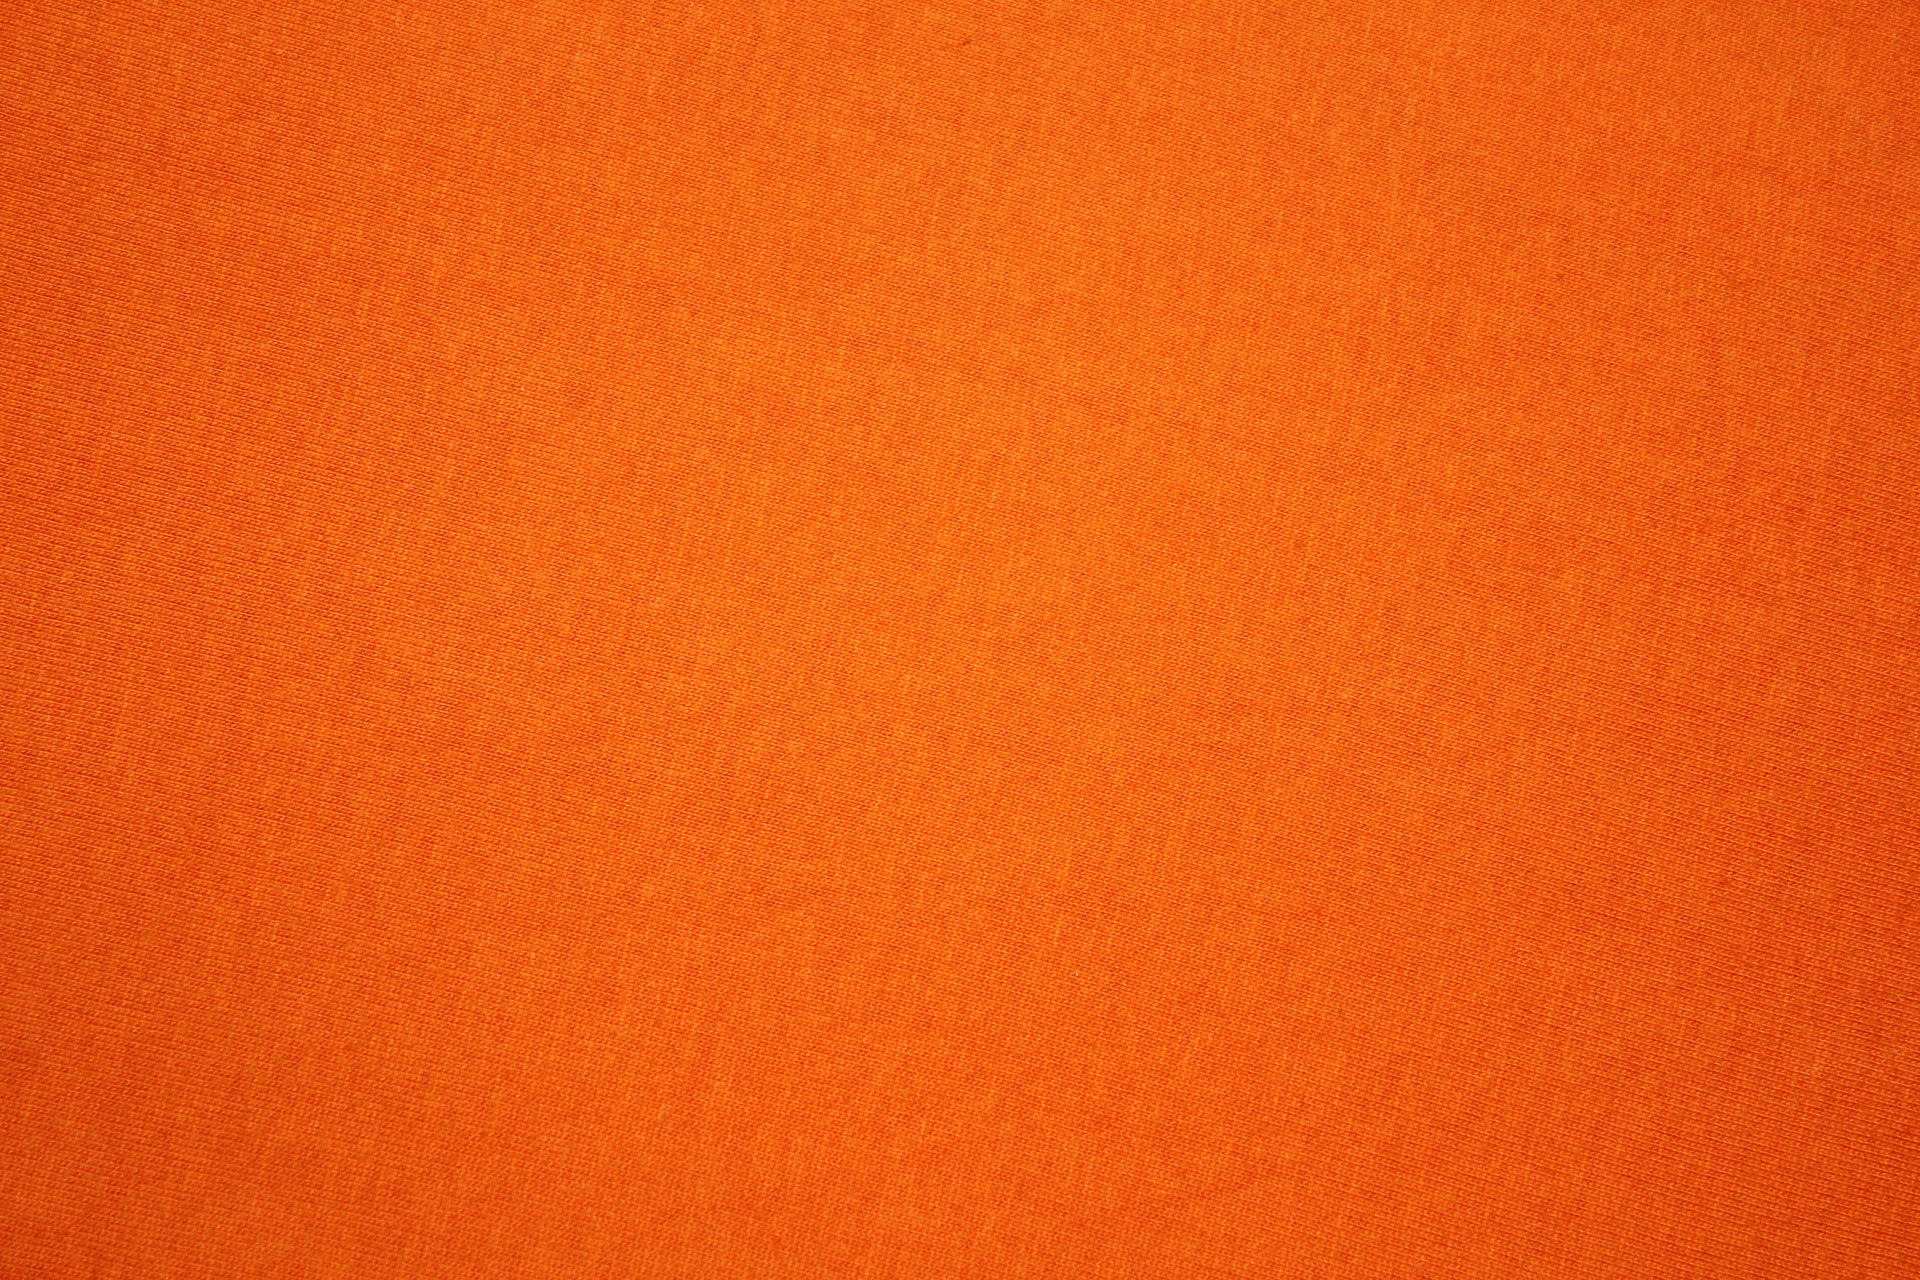 Free photo Orange background